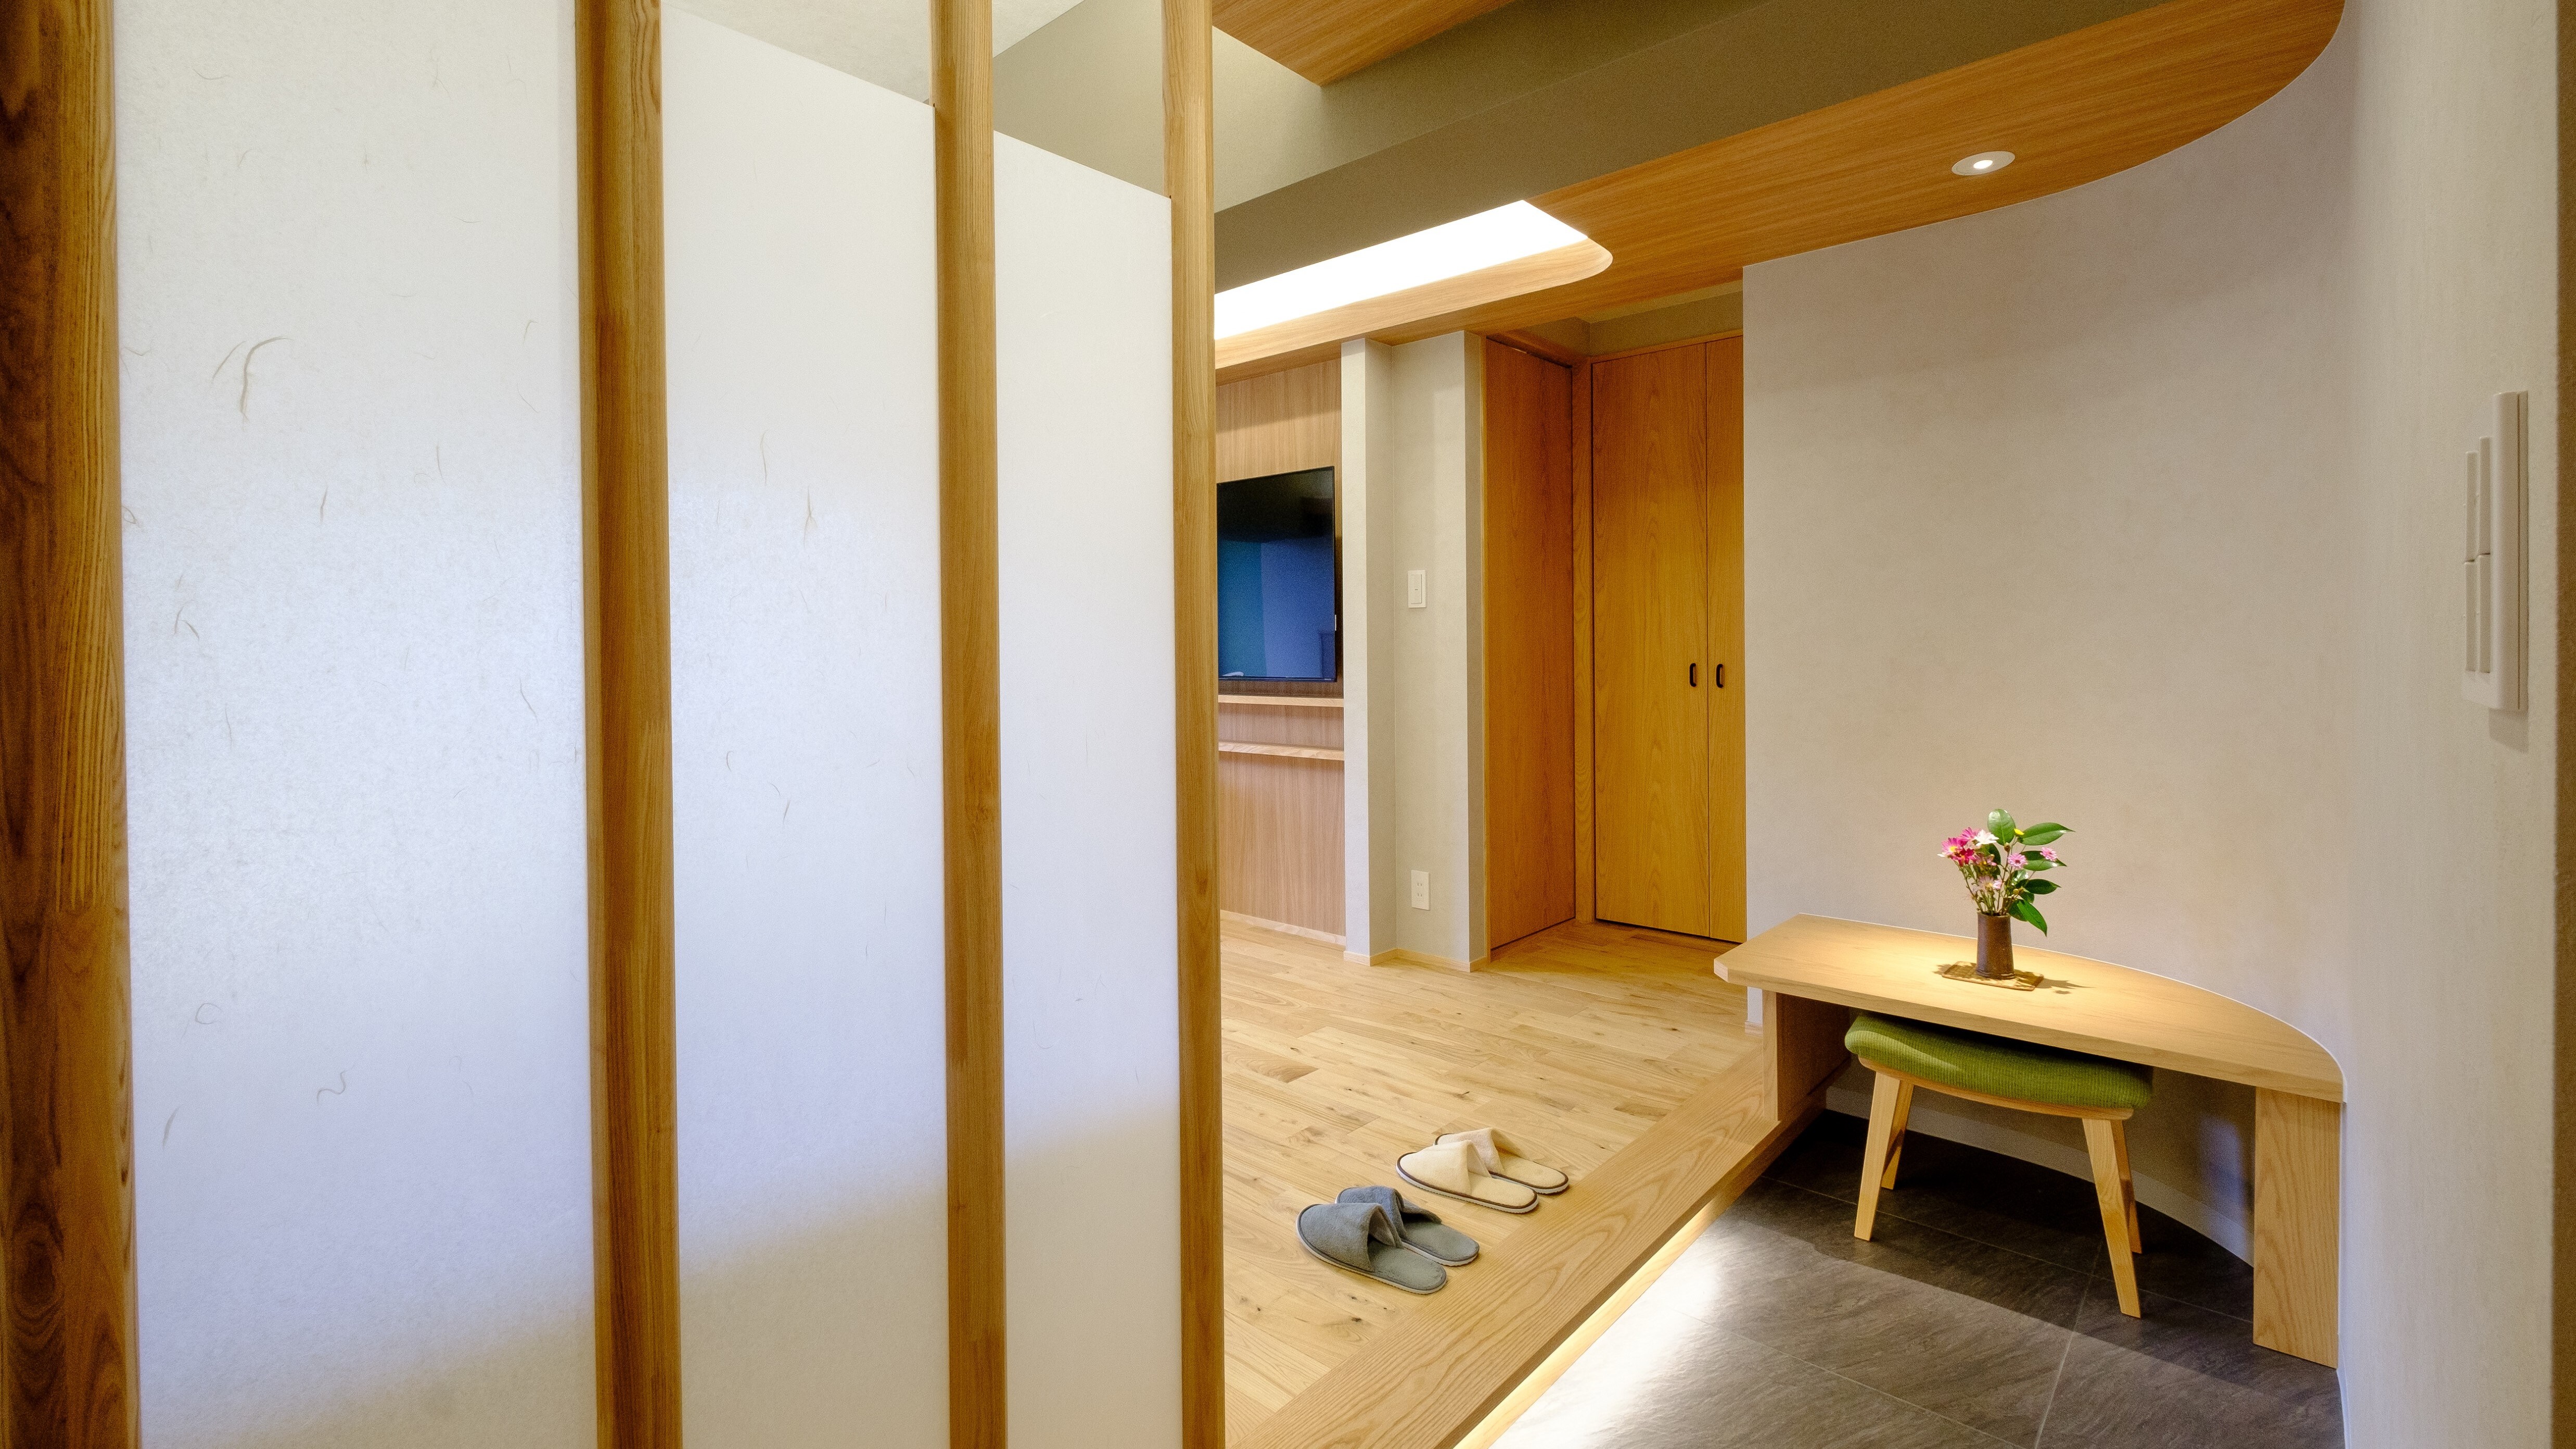 신객실 옥옥 플로어 전망 목욕탕 일본식 모던룸【사쿠사】금연실